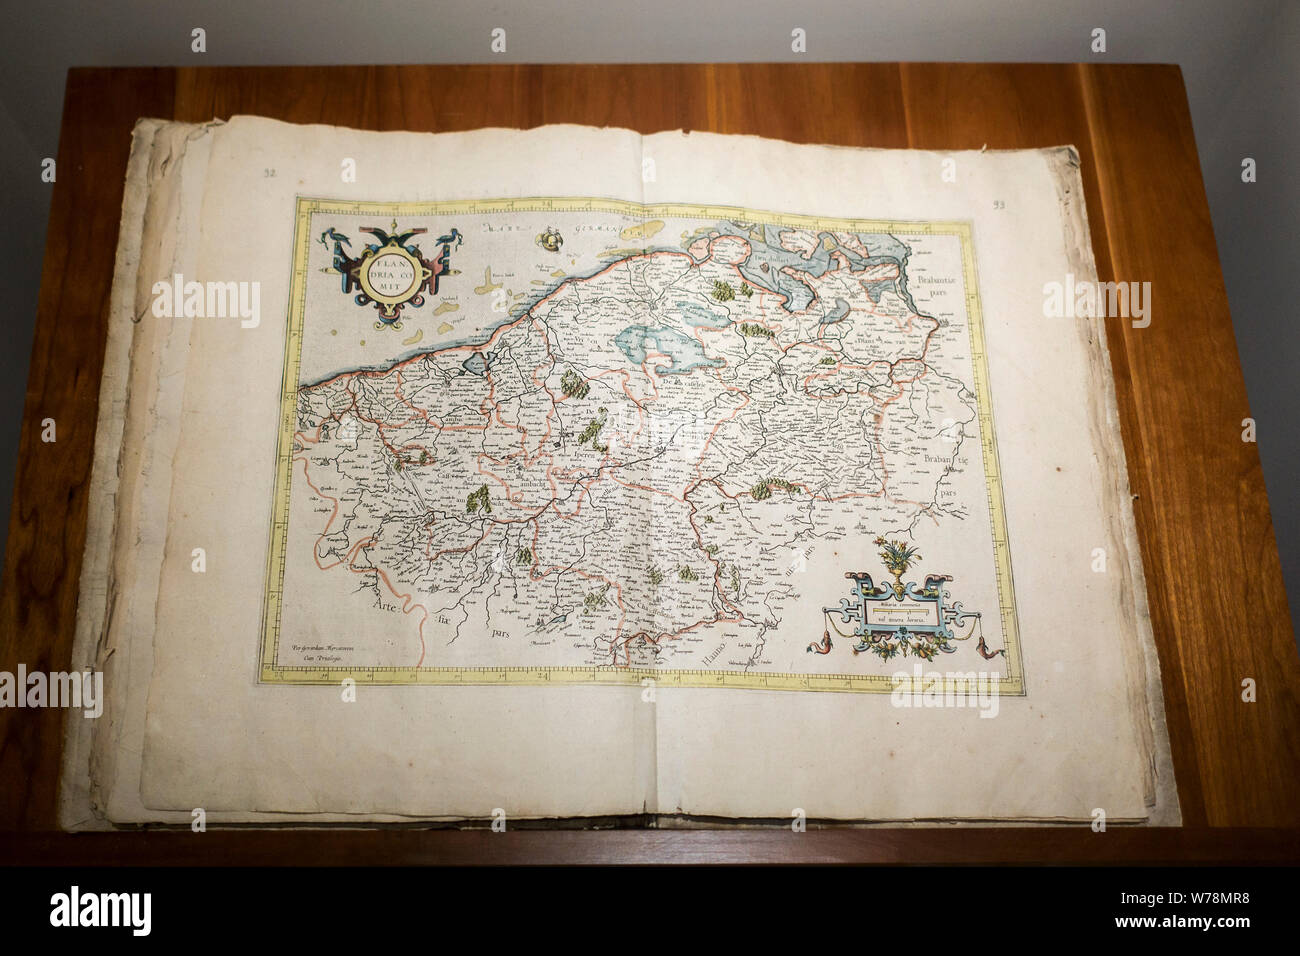 1585 Atlas Galliae Geographicae tabule von 16. Jahrhundert geograph Gerardus Mercator übersicht Karte der Niederlande/Belgii Inferioris Stockfoto